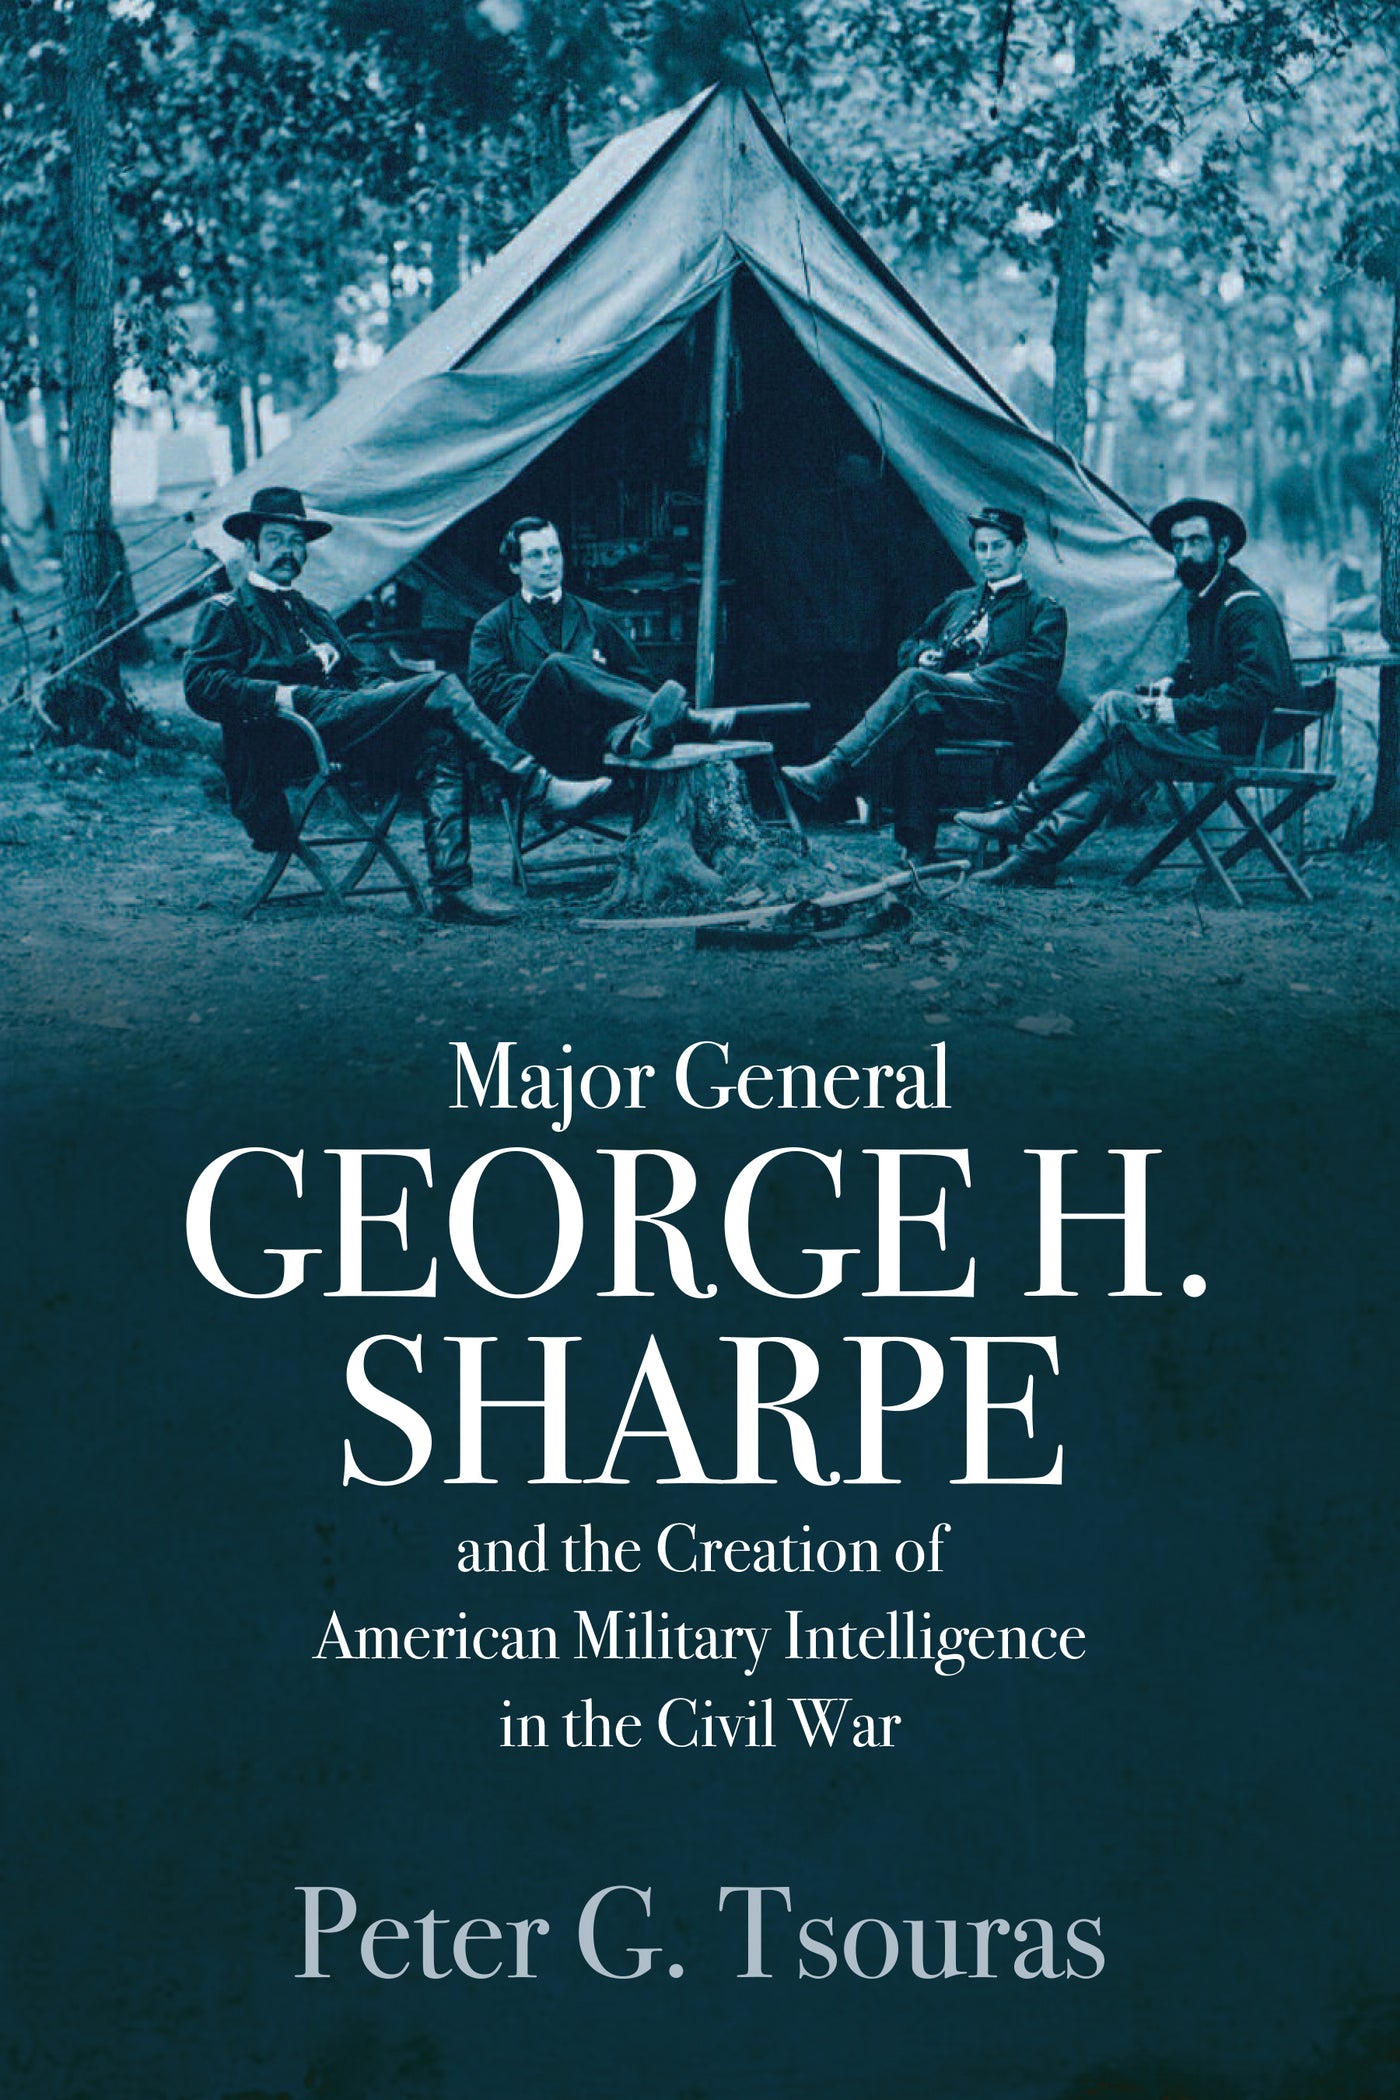 Generalmajor George H. Sharpe und die Schaffung des amerikanischen Militärgeheimdienstes im Bürgerkrieg 